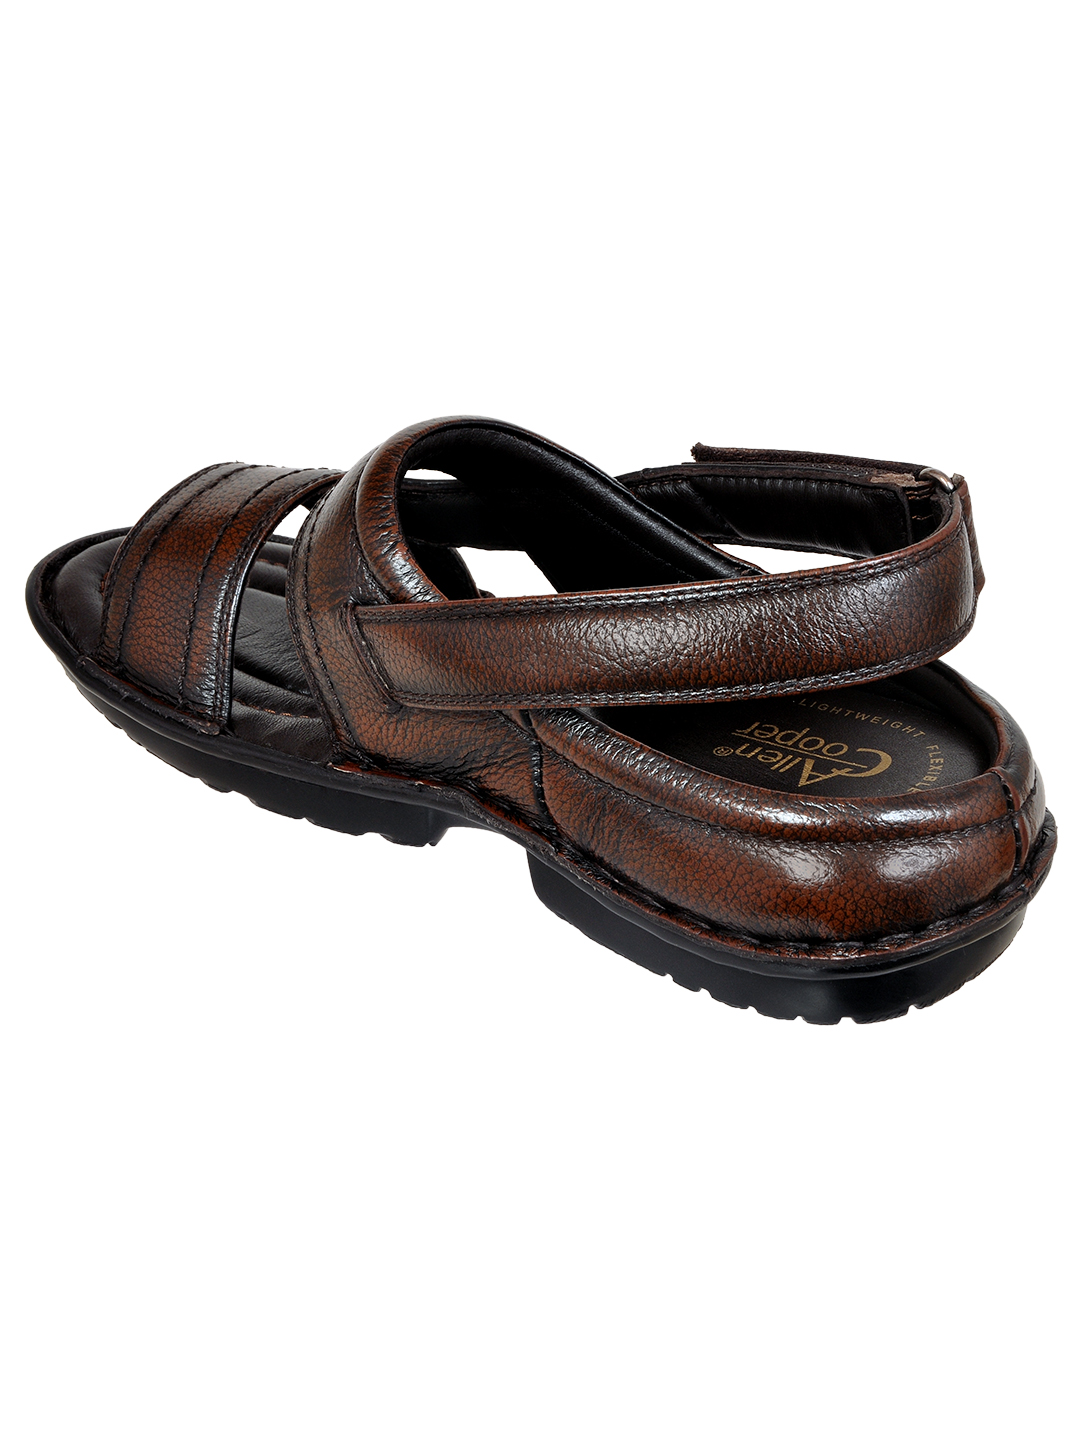 Allen Cooper Leather Sandals For men - Allen Cooper | Most Comfortable ...